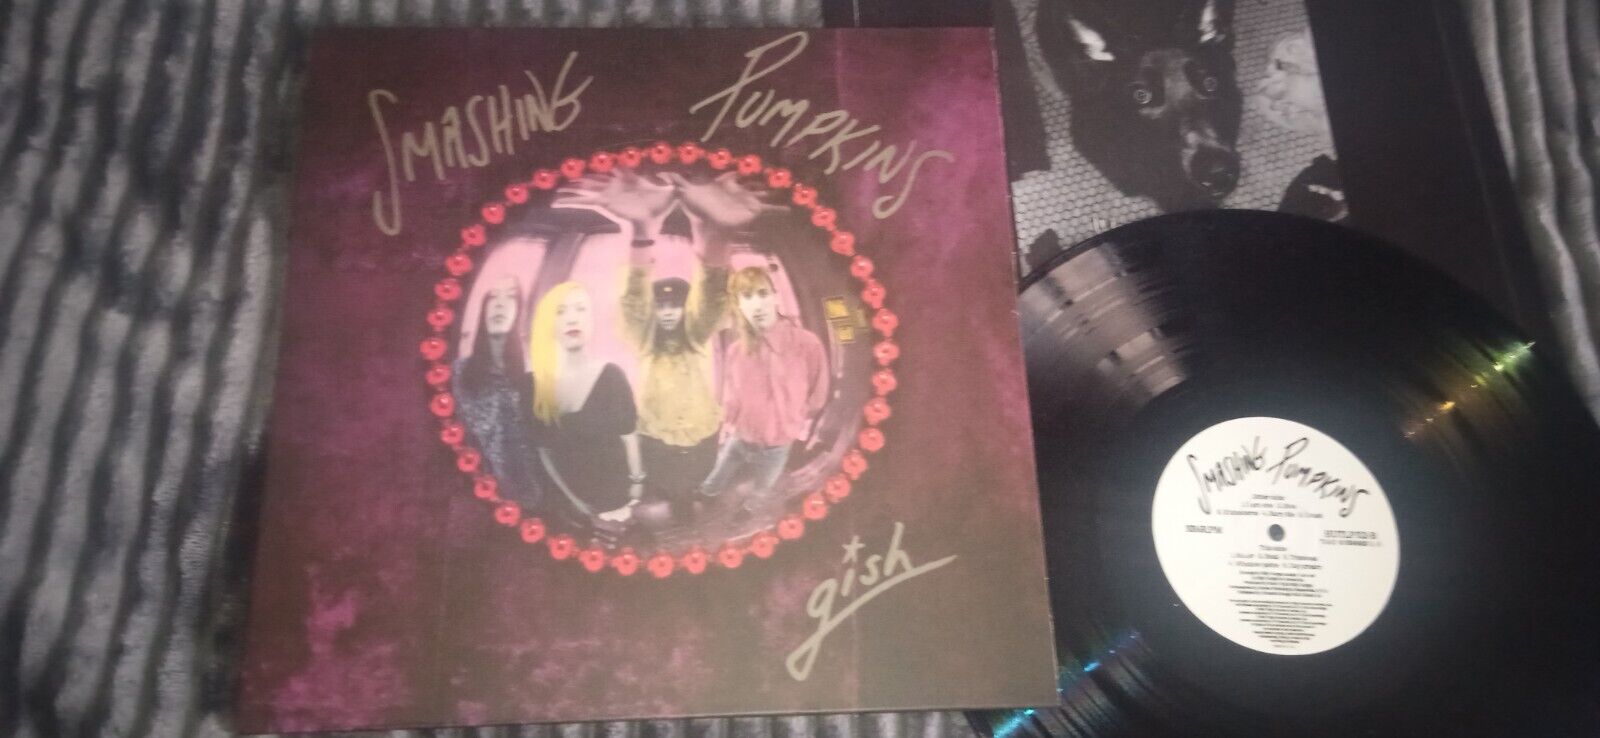 Smashing Pumpkins  - Gish Vinyl, LP, Album, Reissue, GRUNGE Remastered